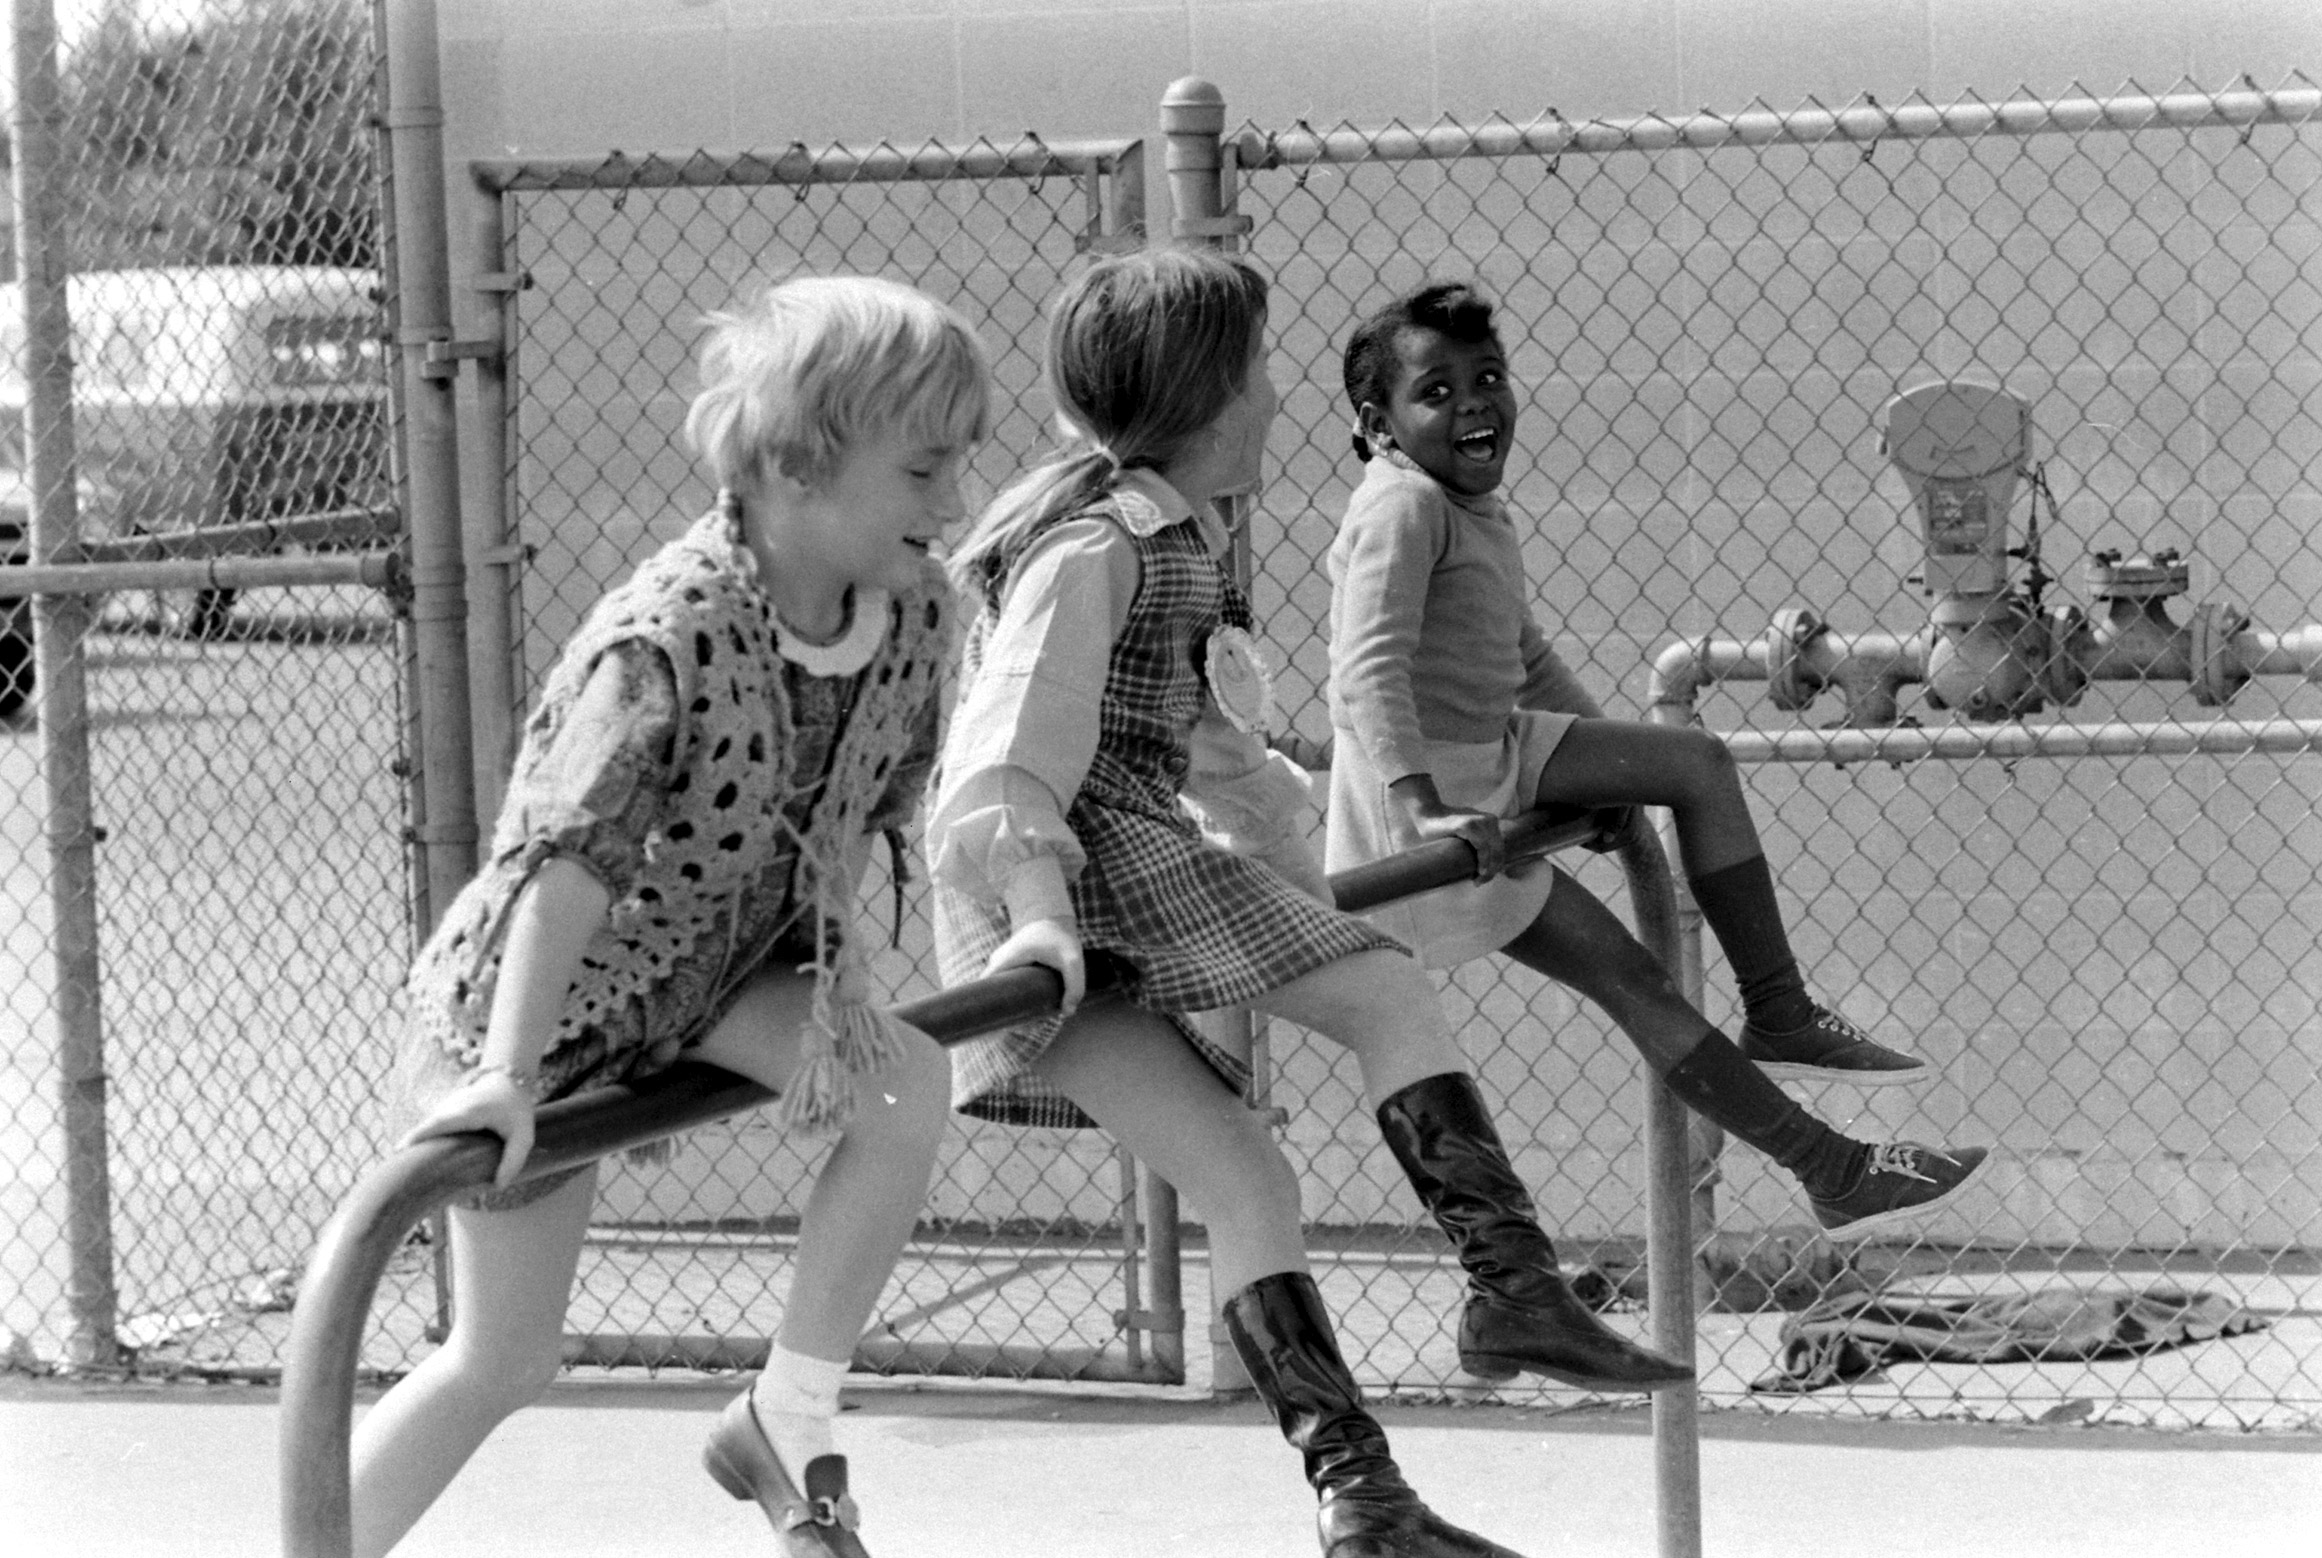 Leapwood Avenue Elementary School, 1970